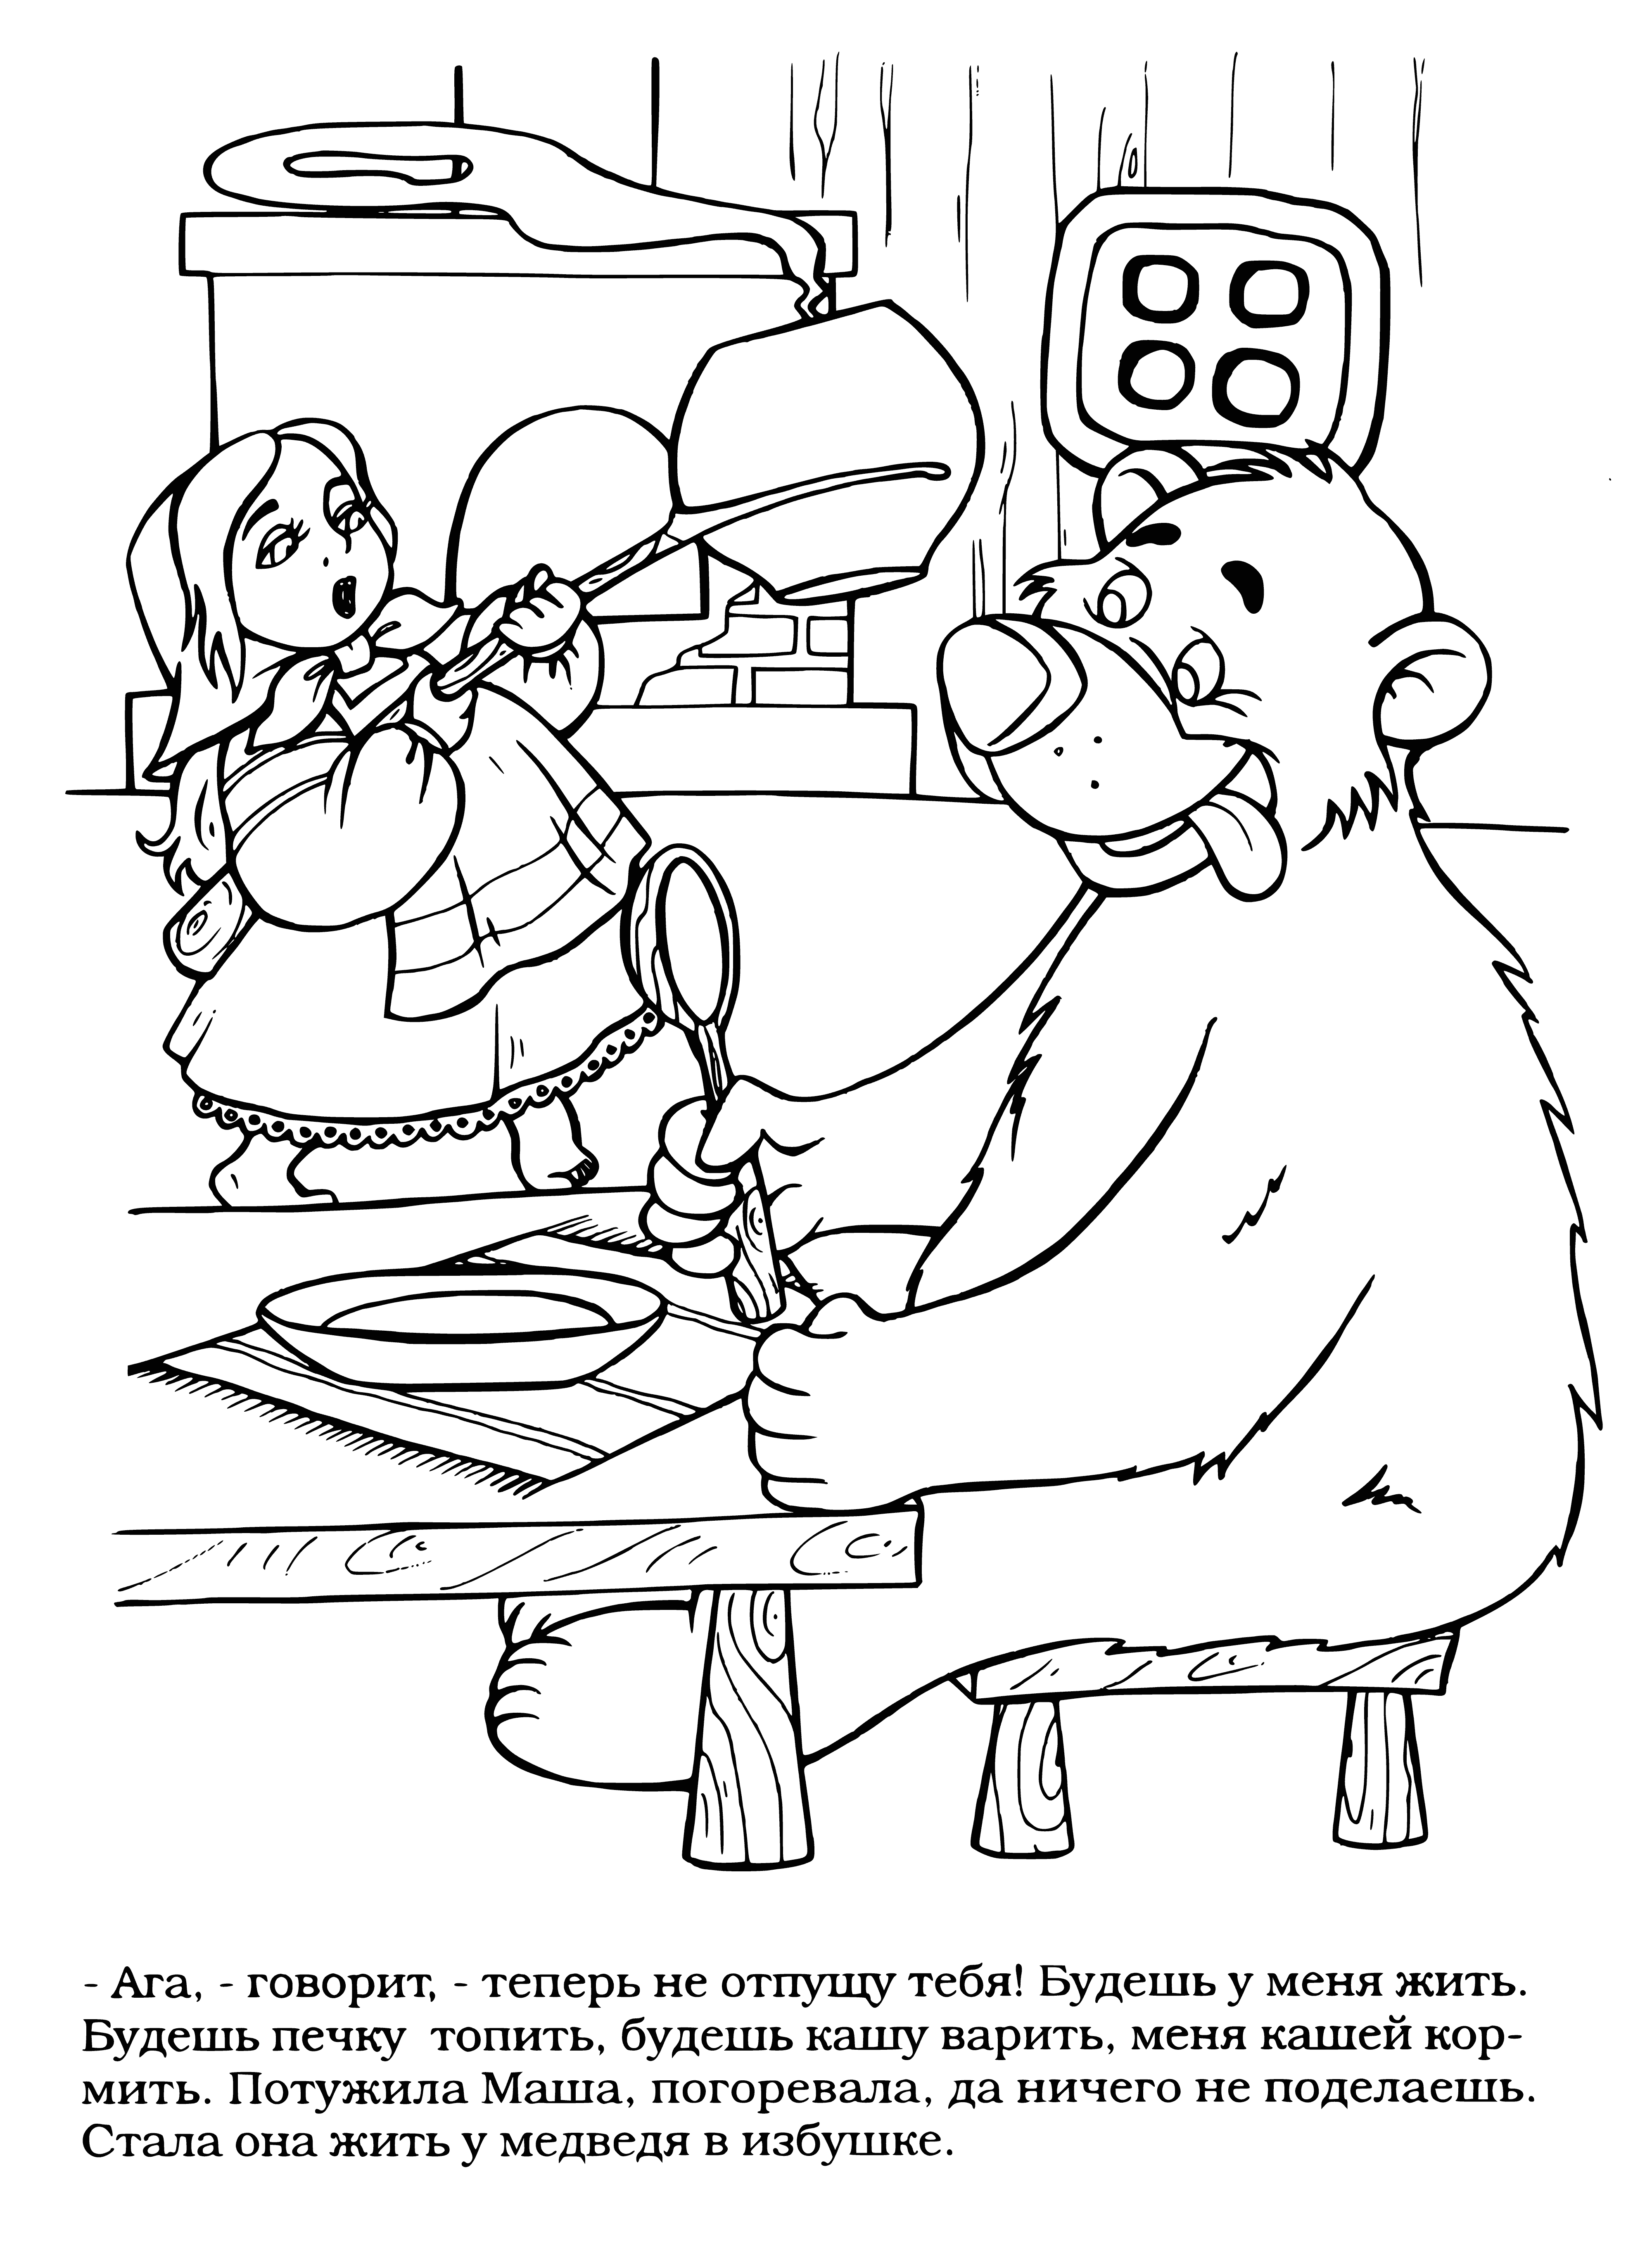 Masha at the Bear coloring page